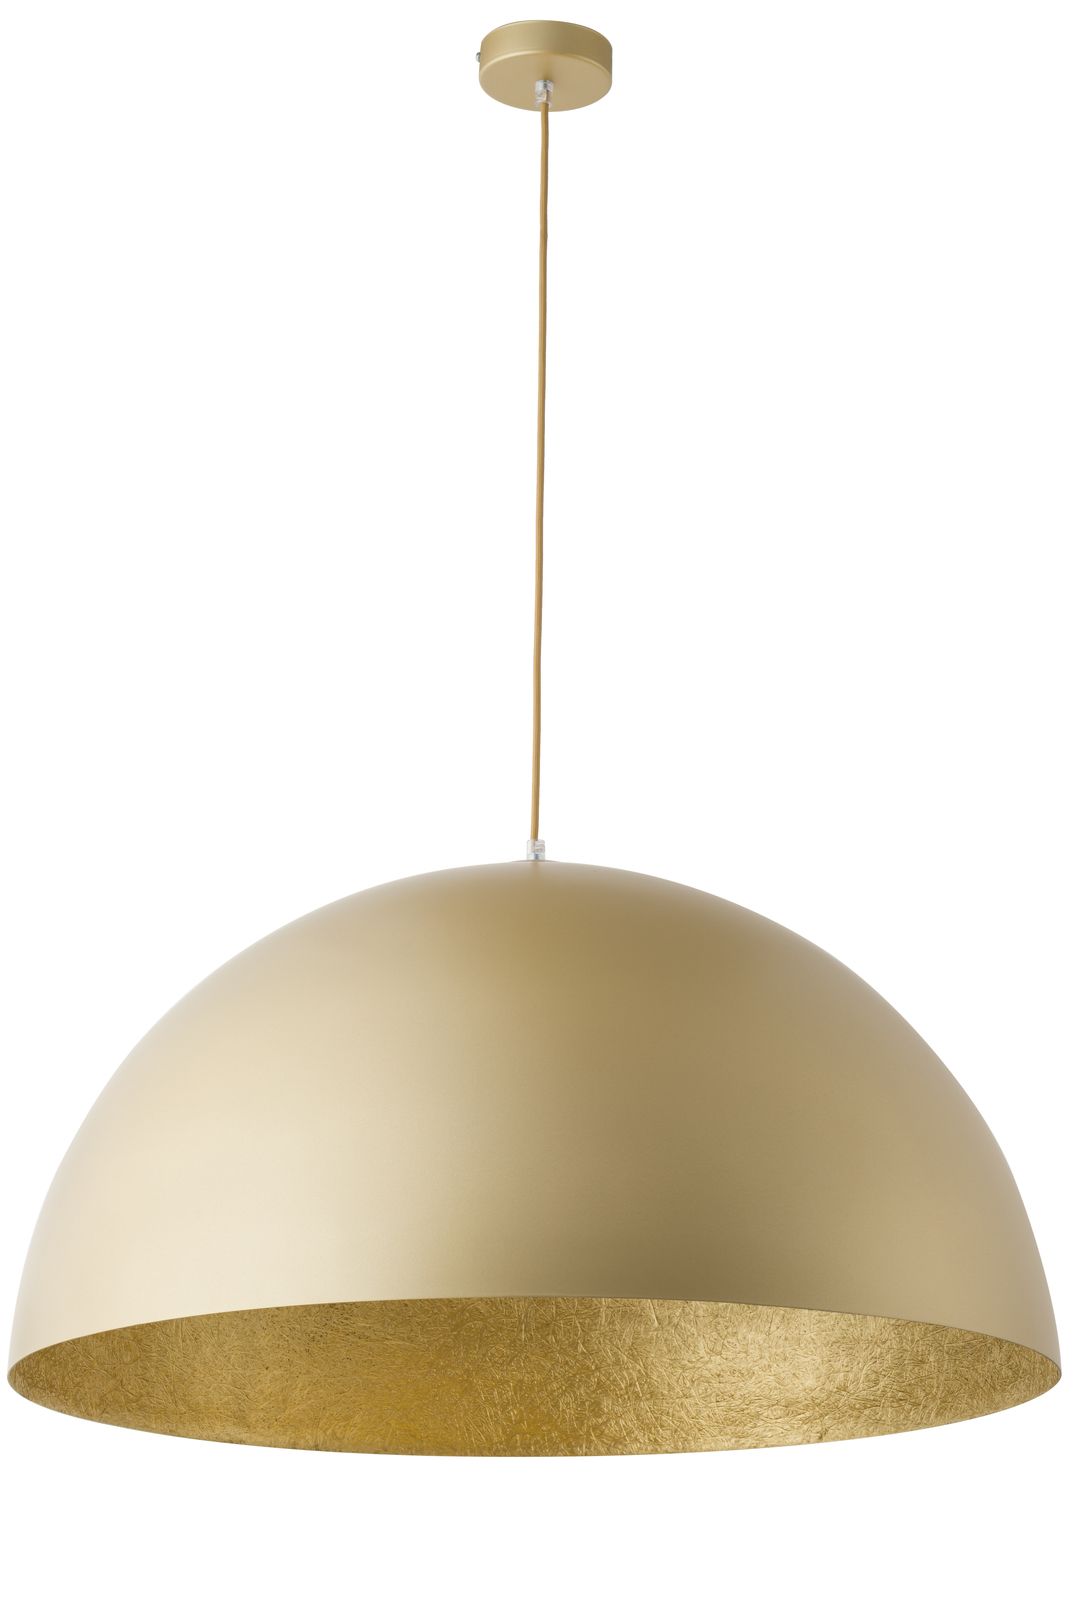 Große Pendelleuchte Gold Metall Loft E27 rund Ø70 cm